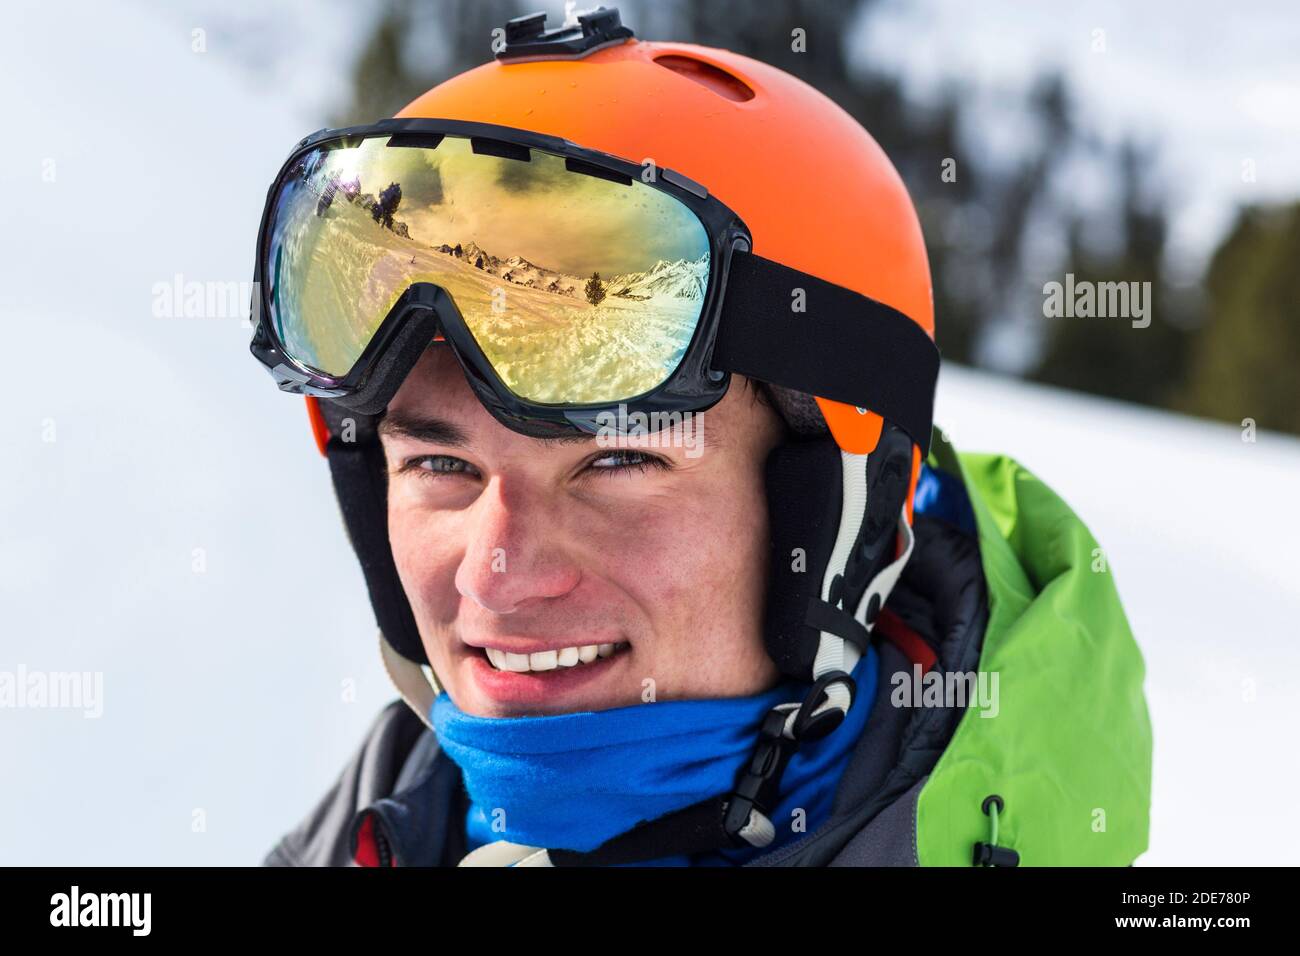 Österreich, Stubaier Alpen, Sellrain, Kühtai, Snowboarder mit Spiegelung in der Skibrille Stock Photo